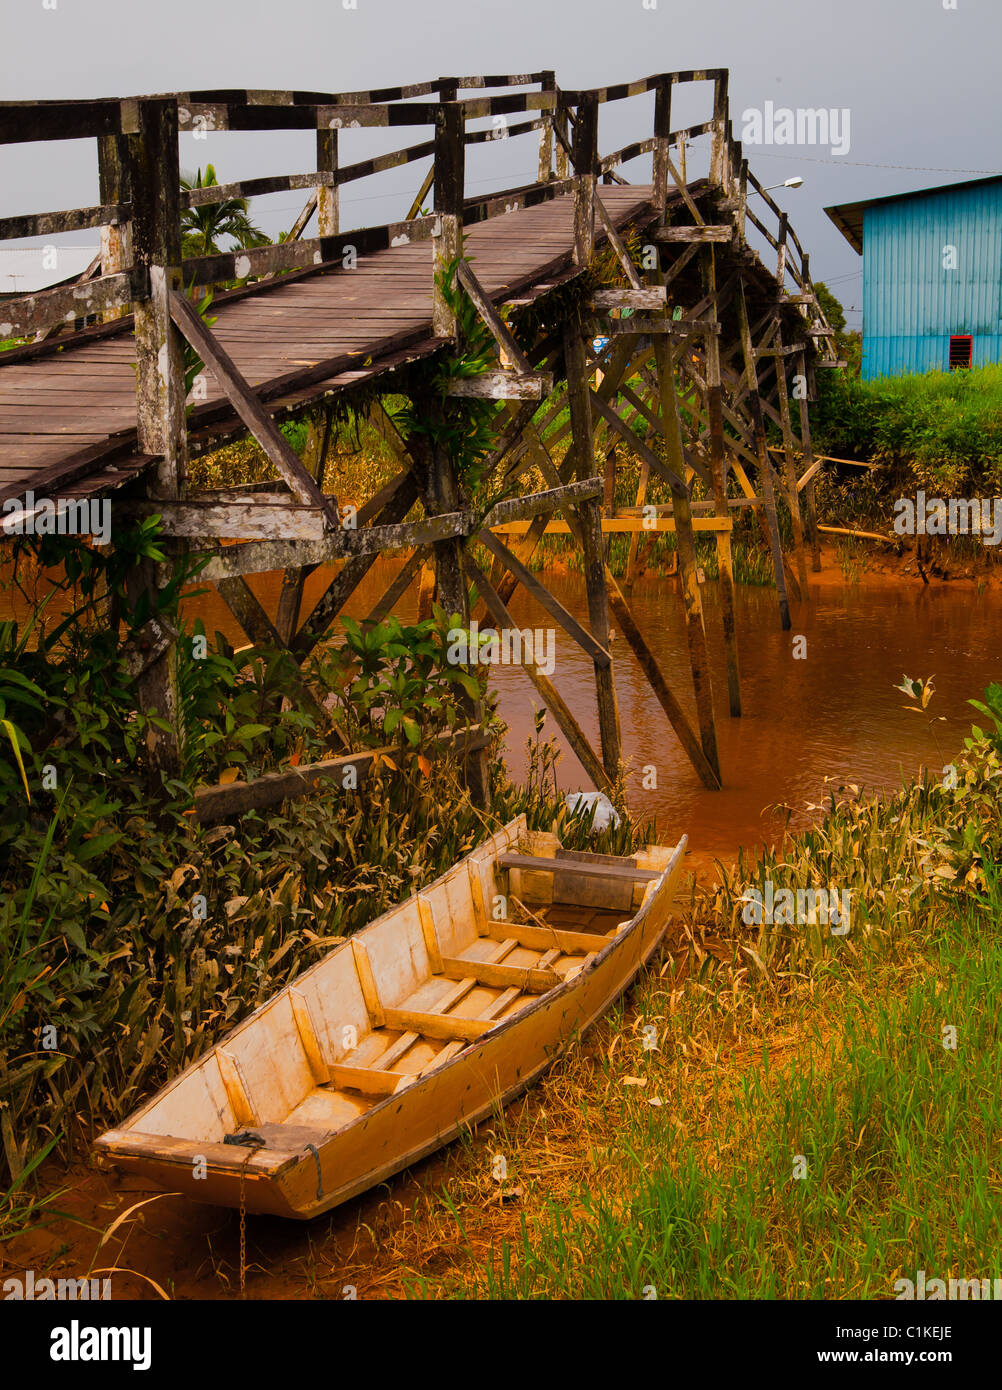 Hölzerne Brücke und Boot, Iban-Dorf in der Nähe von Sibu, Malaysia Borneo Stockfoto